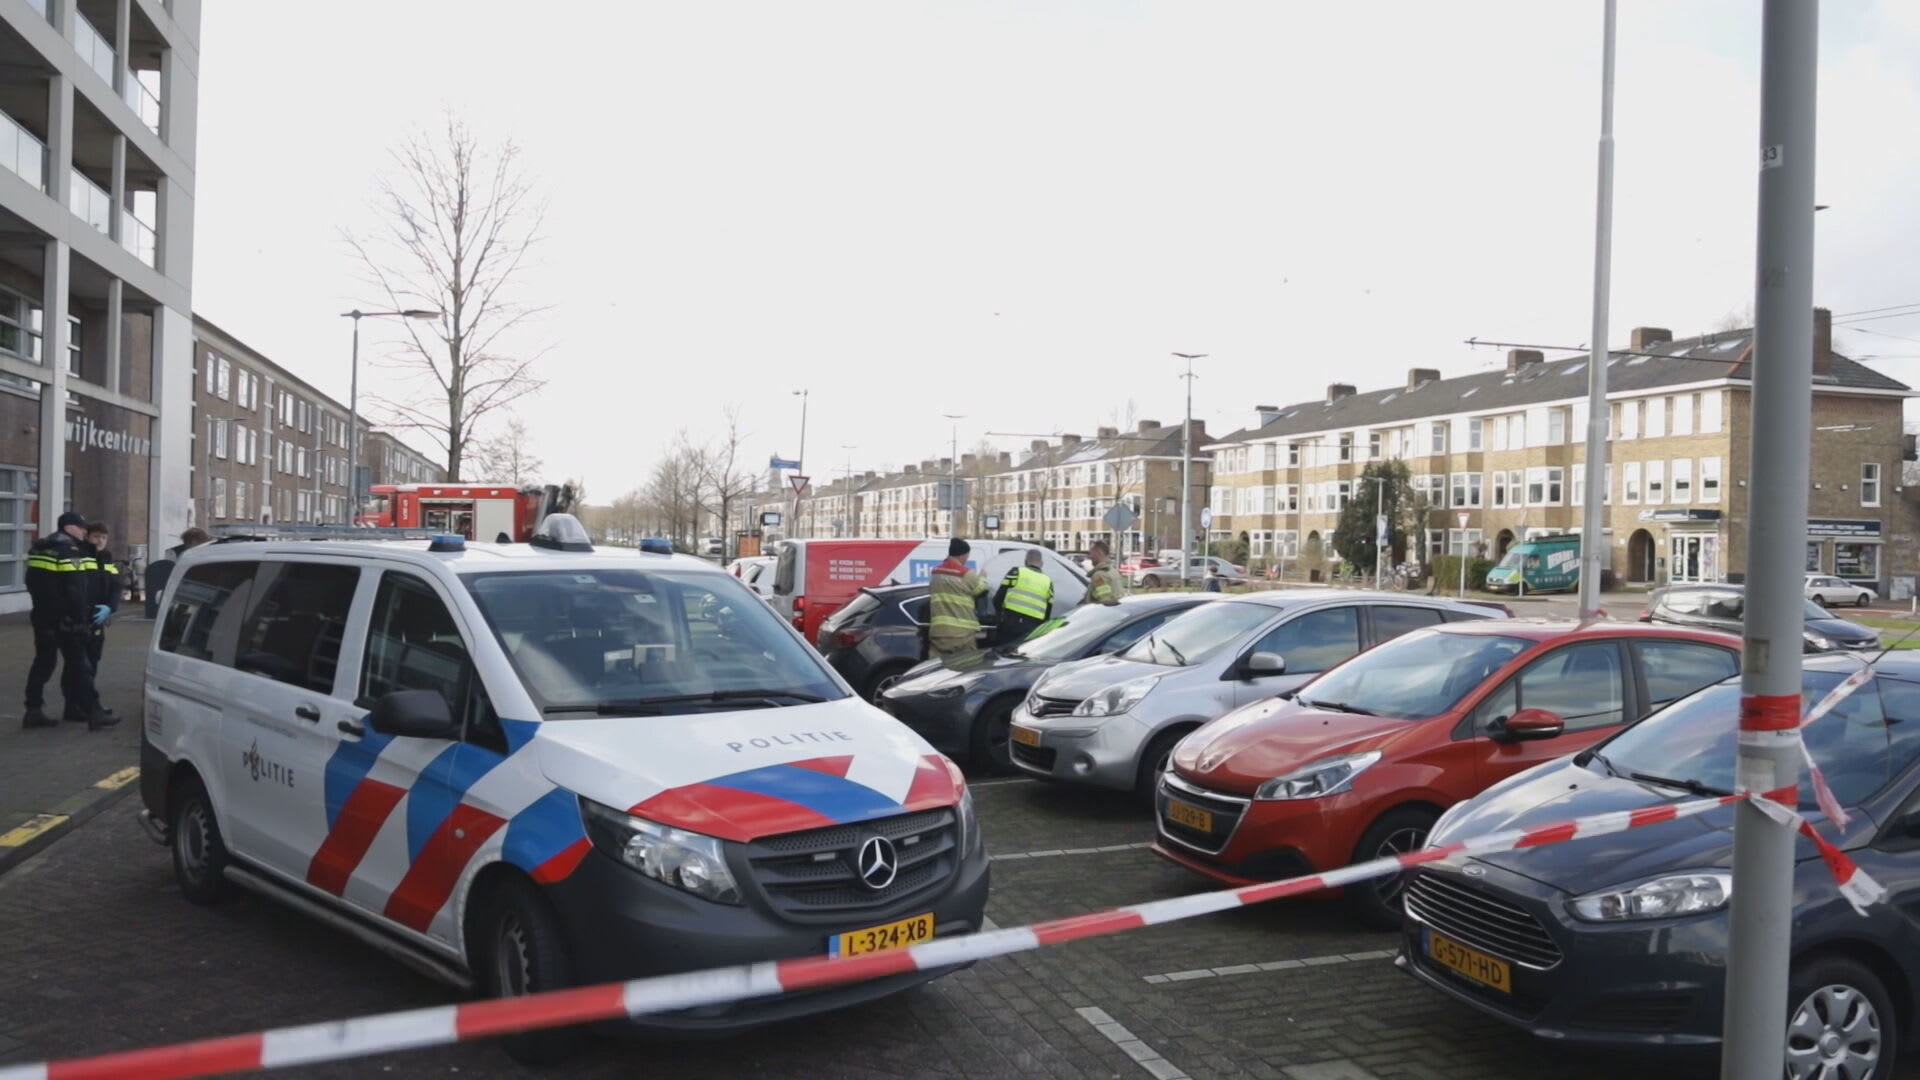 Overleden persoon in auto gevonden in Arnhem, veel onduidelijk